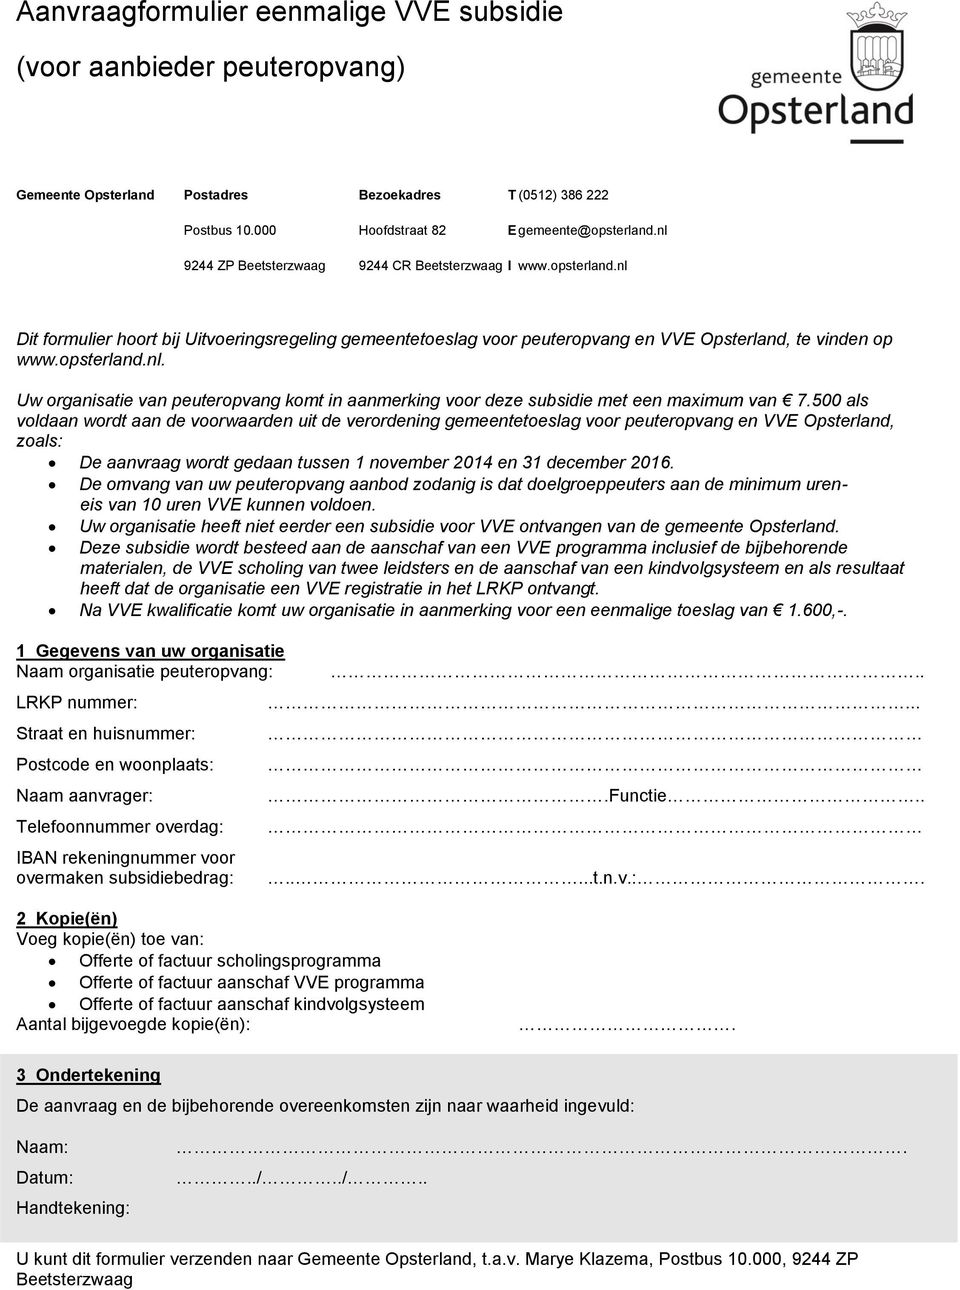 500 als voldaan wordt aan de voorwaarden uit de verordening gemeentetoeslag voor peuteropvang en VVE Opsterland, zoals: De aanvraag wordt gedaan tussen 1 november 2014 en 31 december 2016.